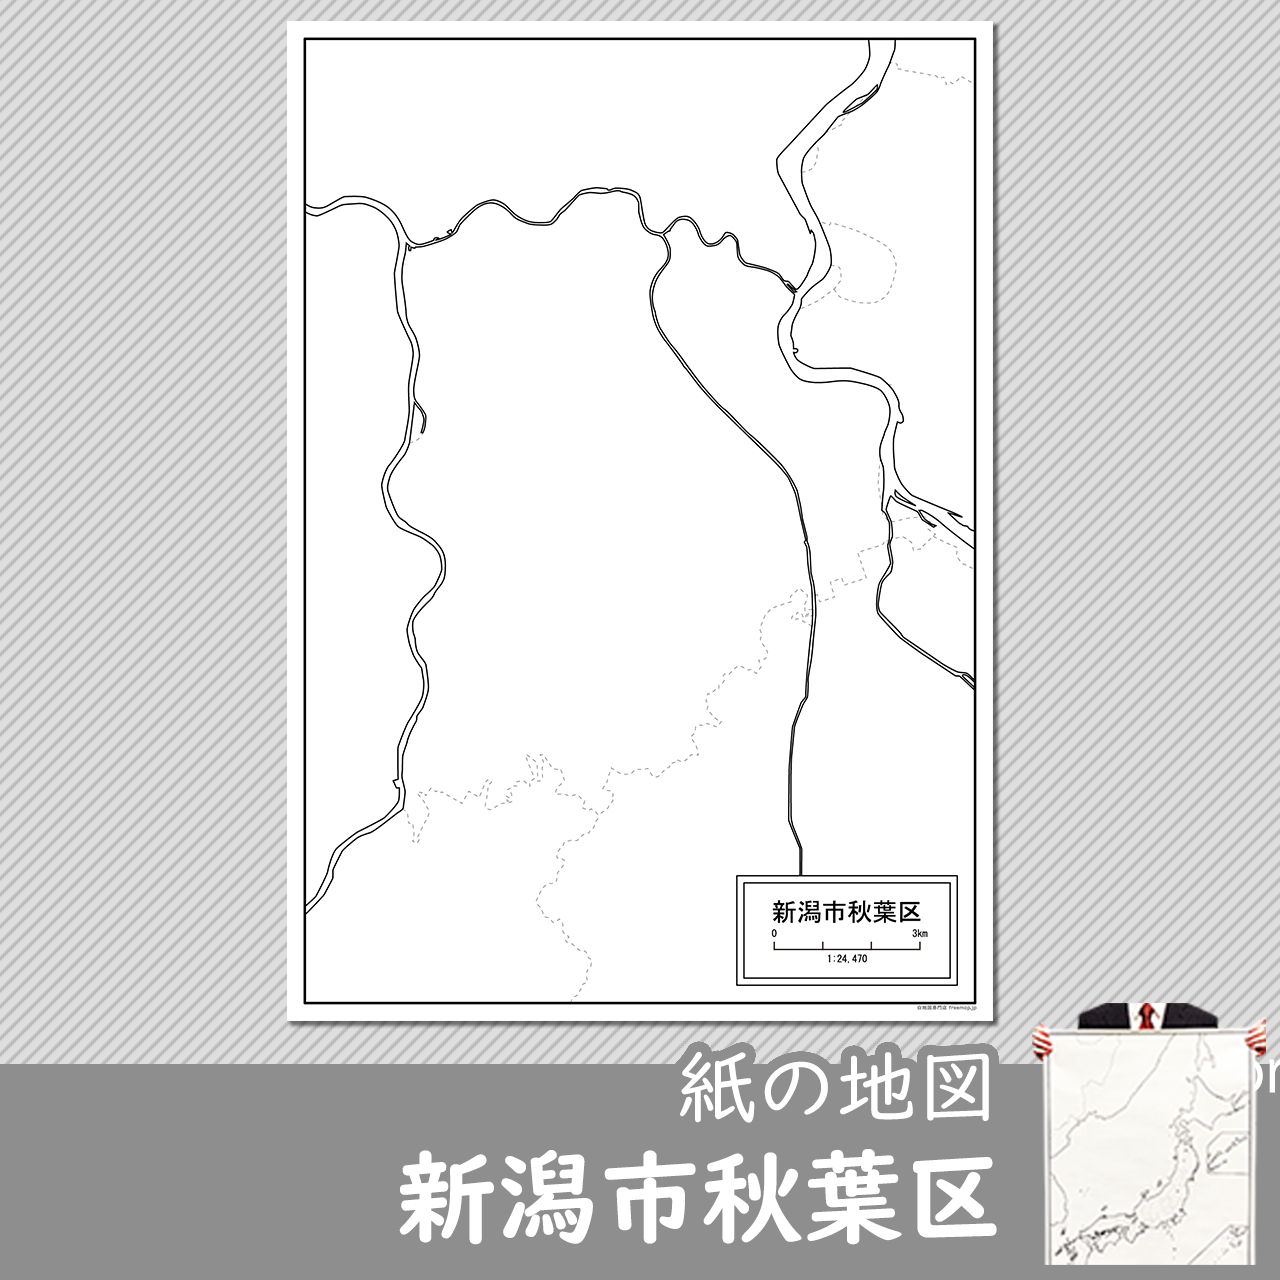 新潟市秋葉区の紙の白地図のサムネイル